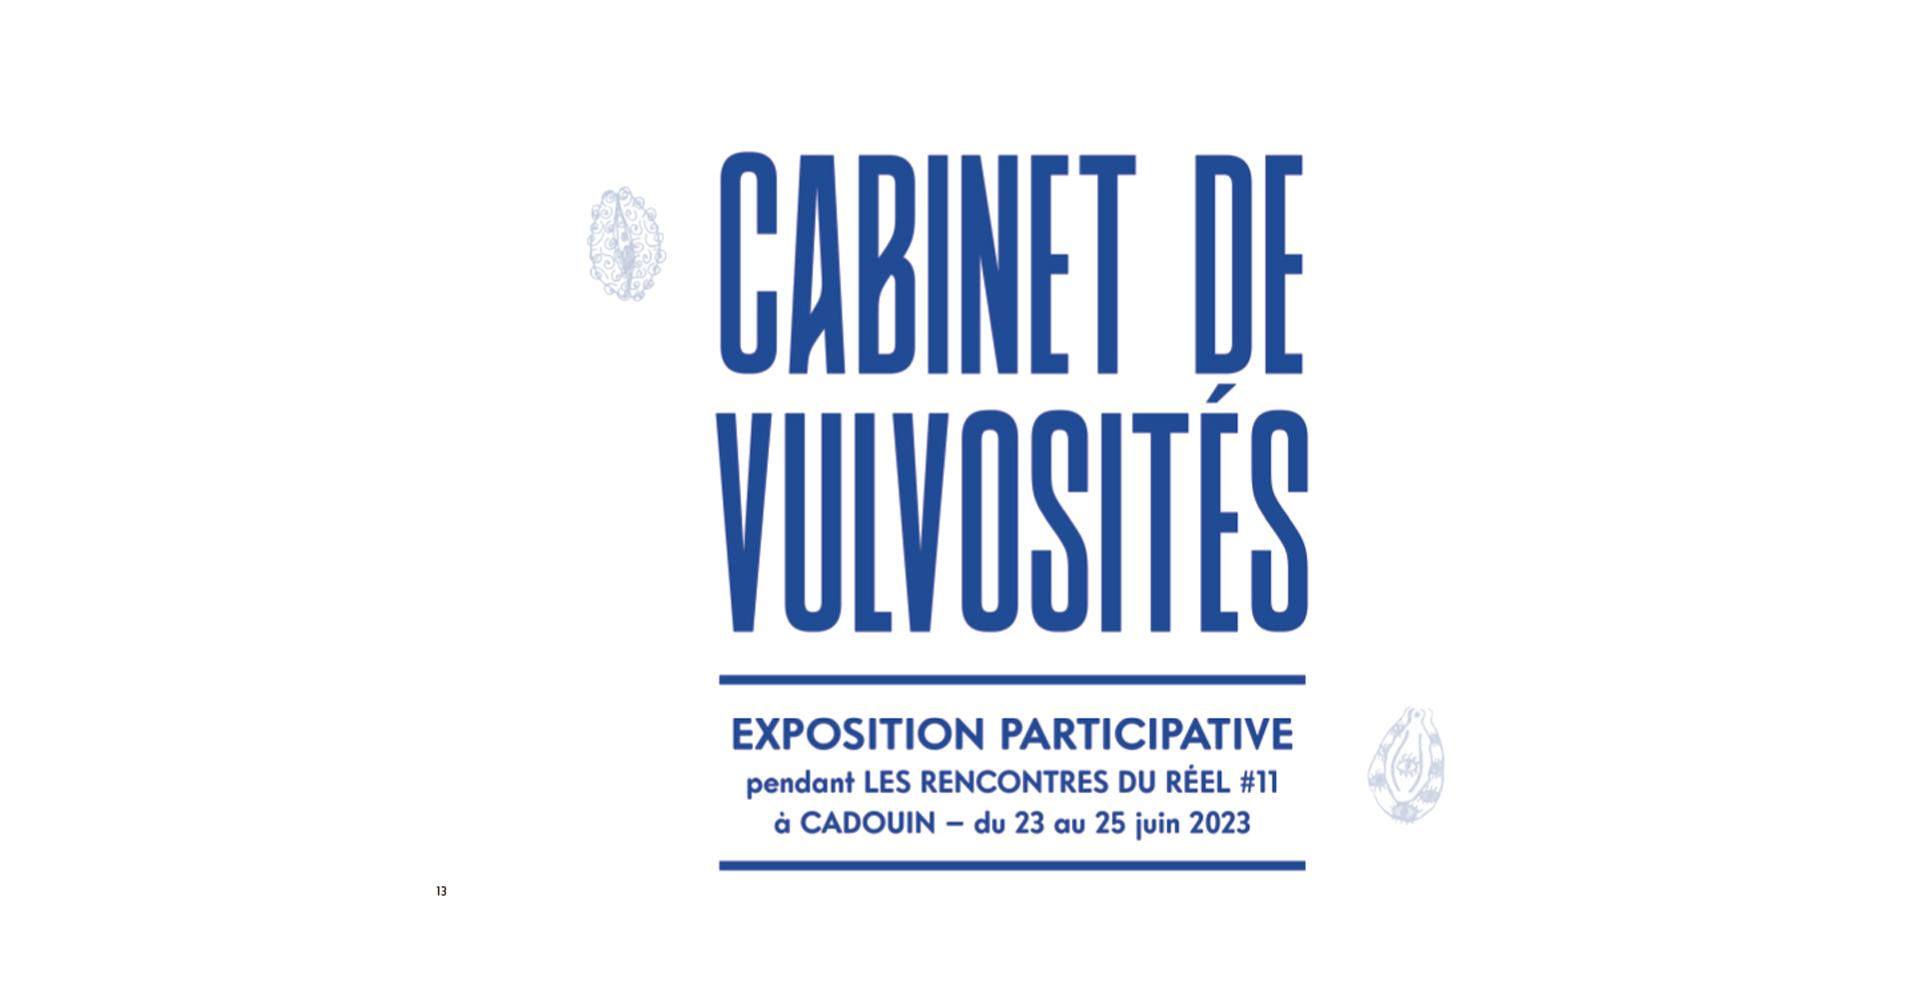 Exposition participative pendant le festival - Cabinet de vulvosités